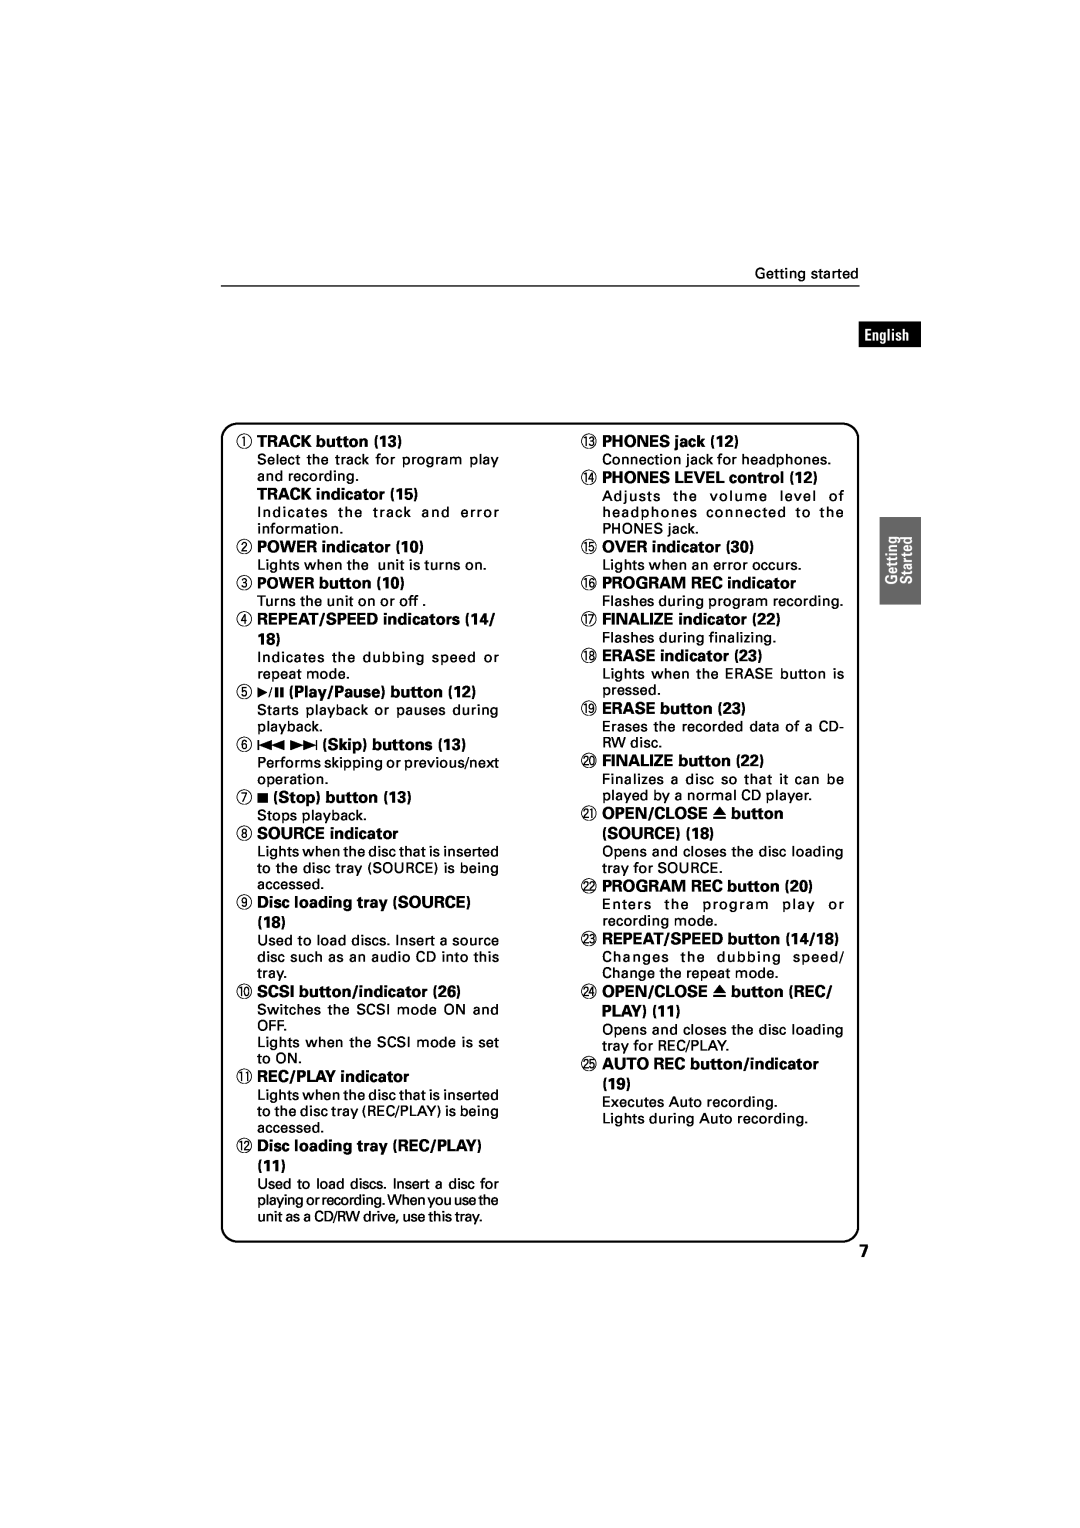 JVC XR-D400SL manual 1TRACK button, English 